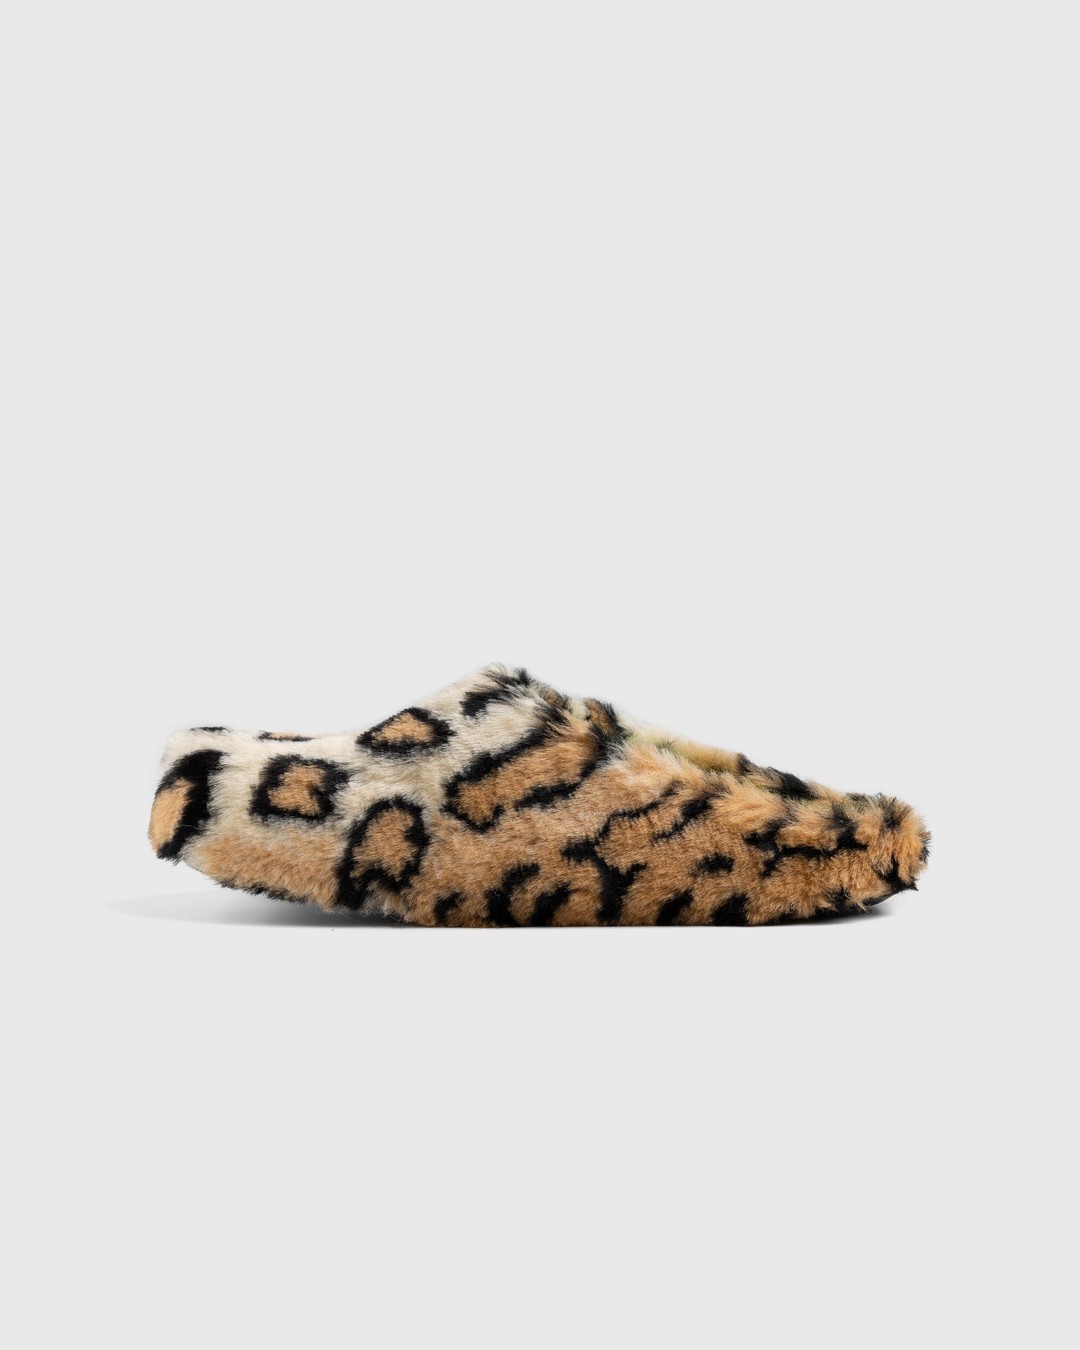 Marni – Leopard Mule Sabot - Sandals & Slides - Brown - Image 2